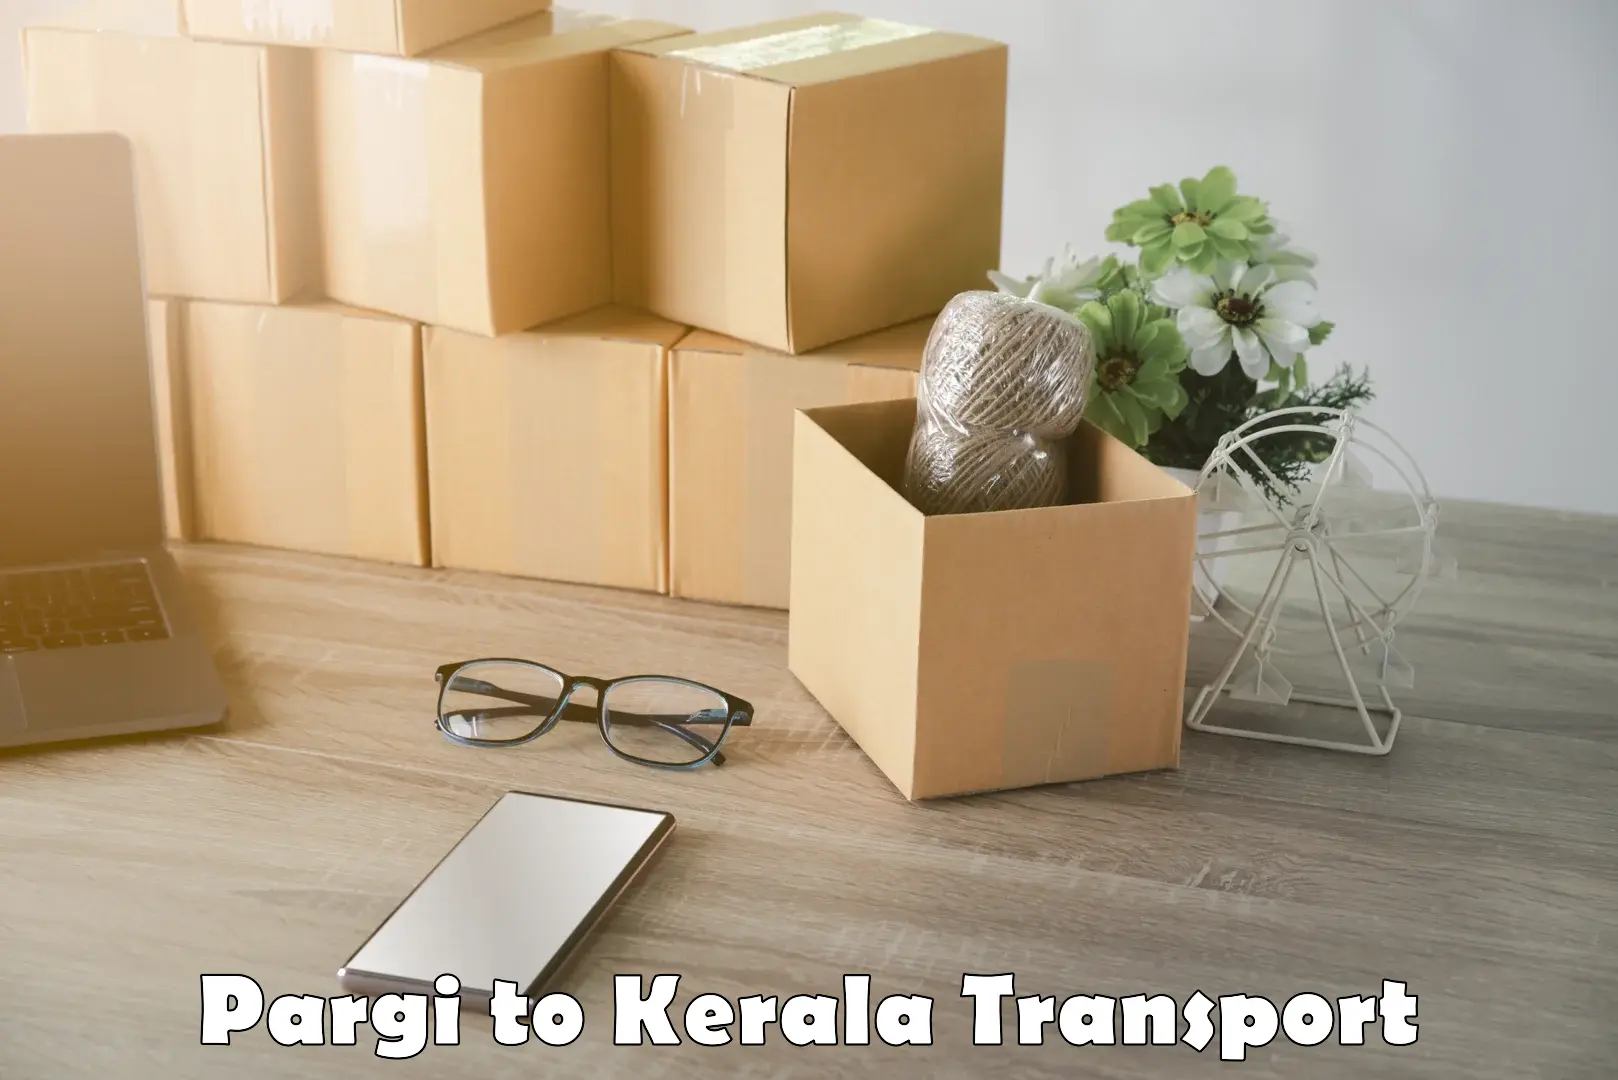 Container transport service Pargi to Kallikkad